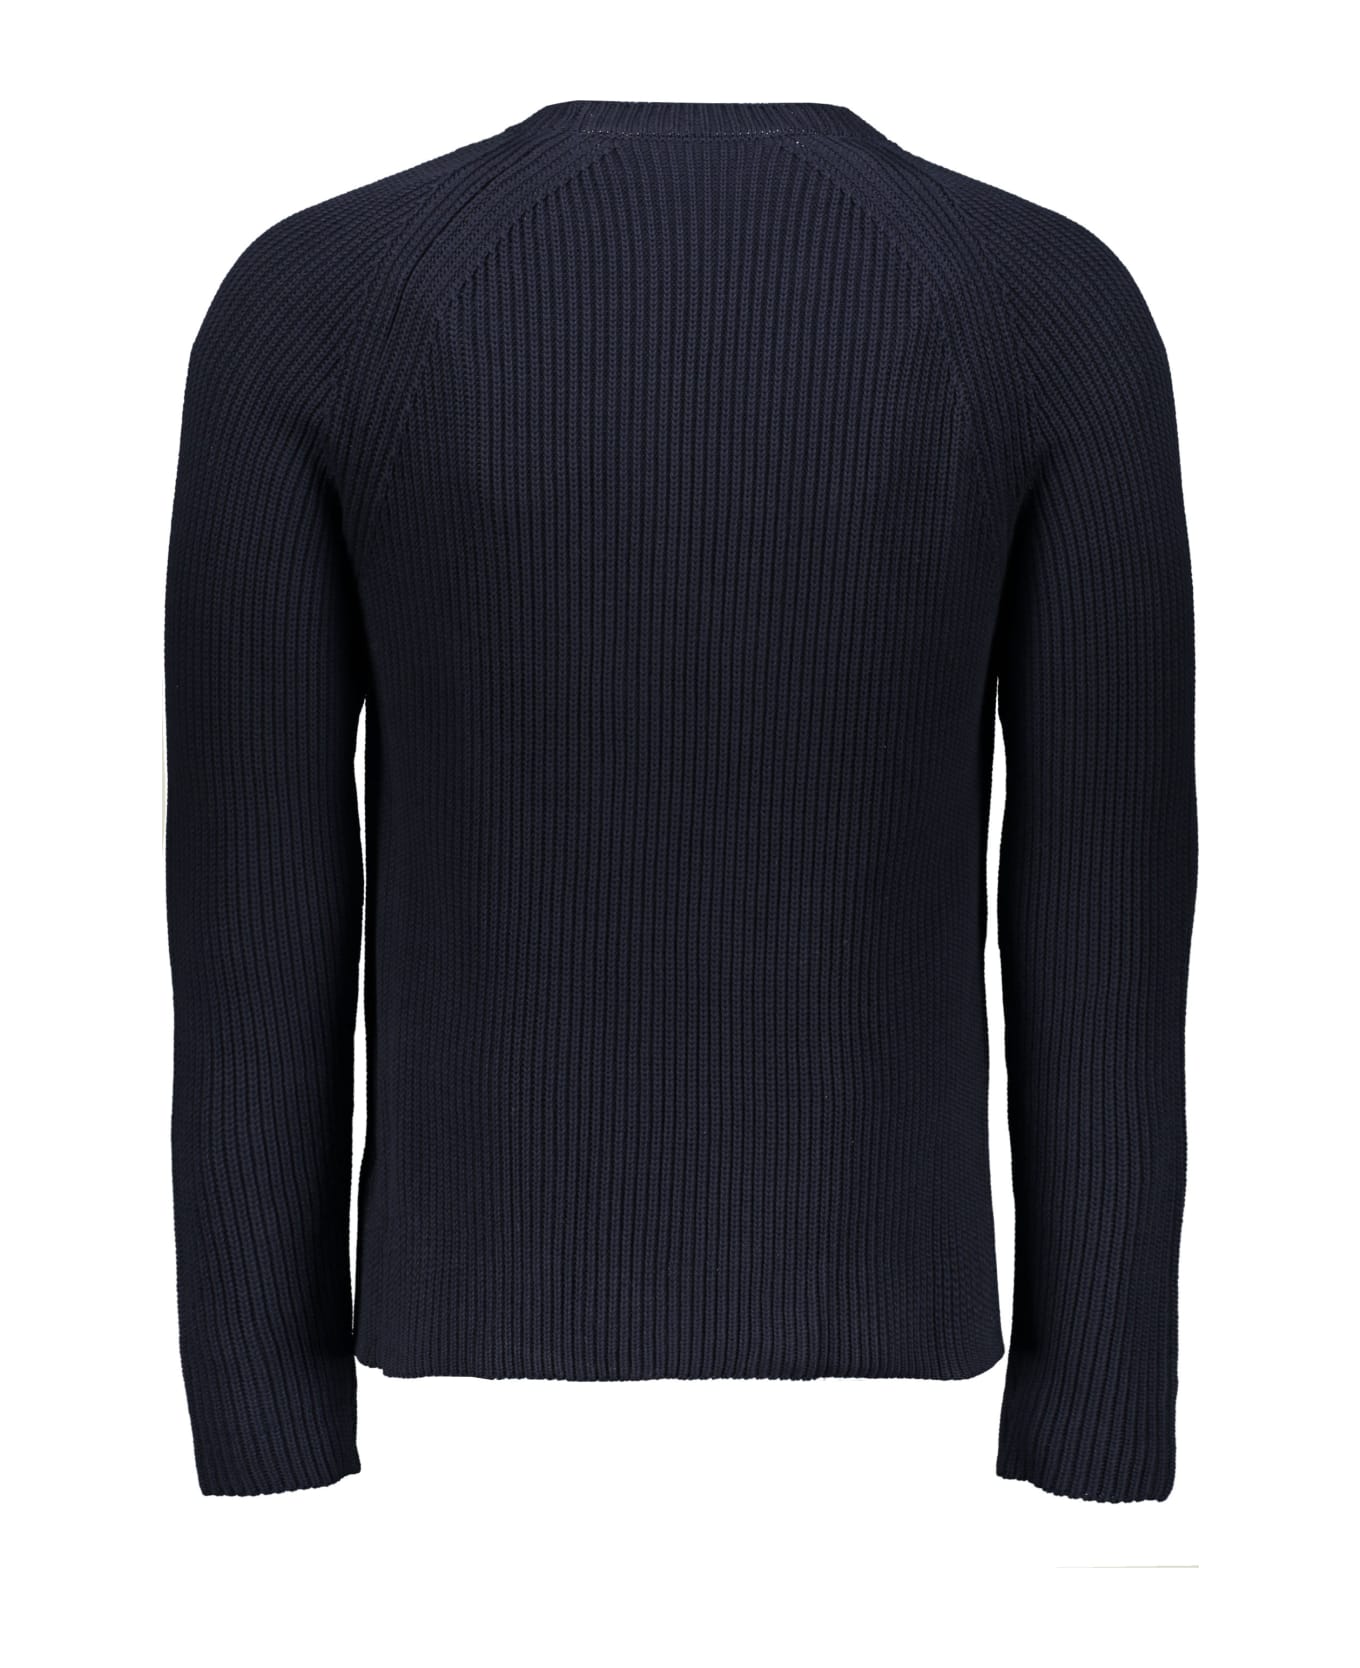 Off-White Long Sleeve Crew-neck Sweater - blue ニットウェア